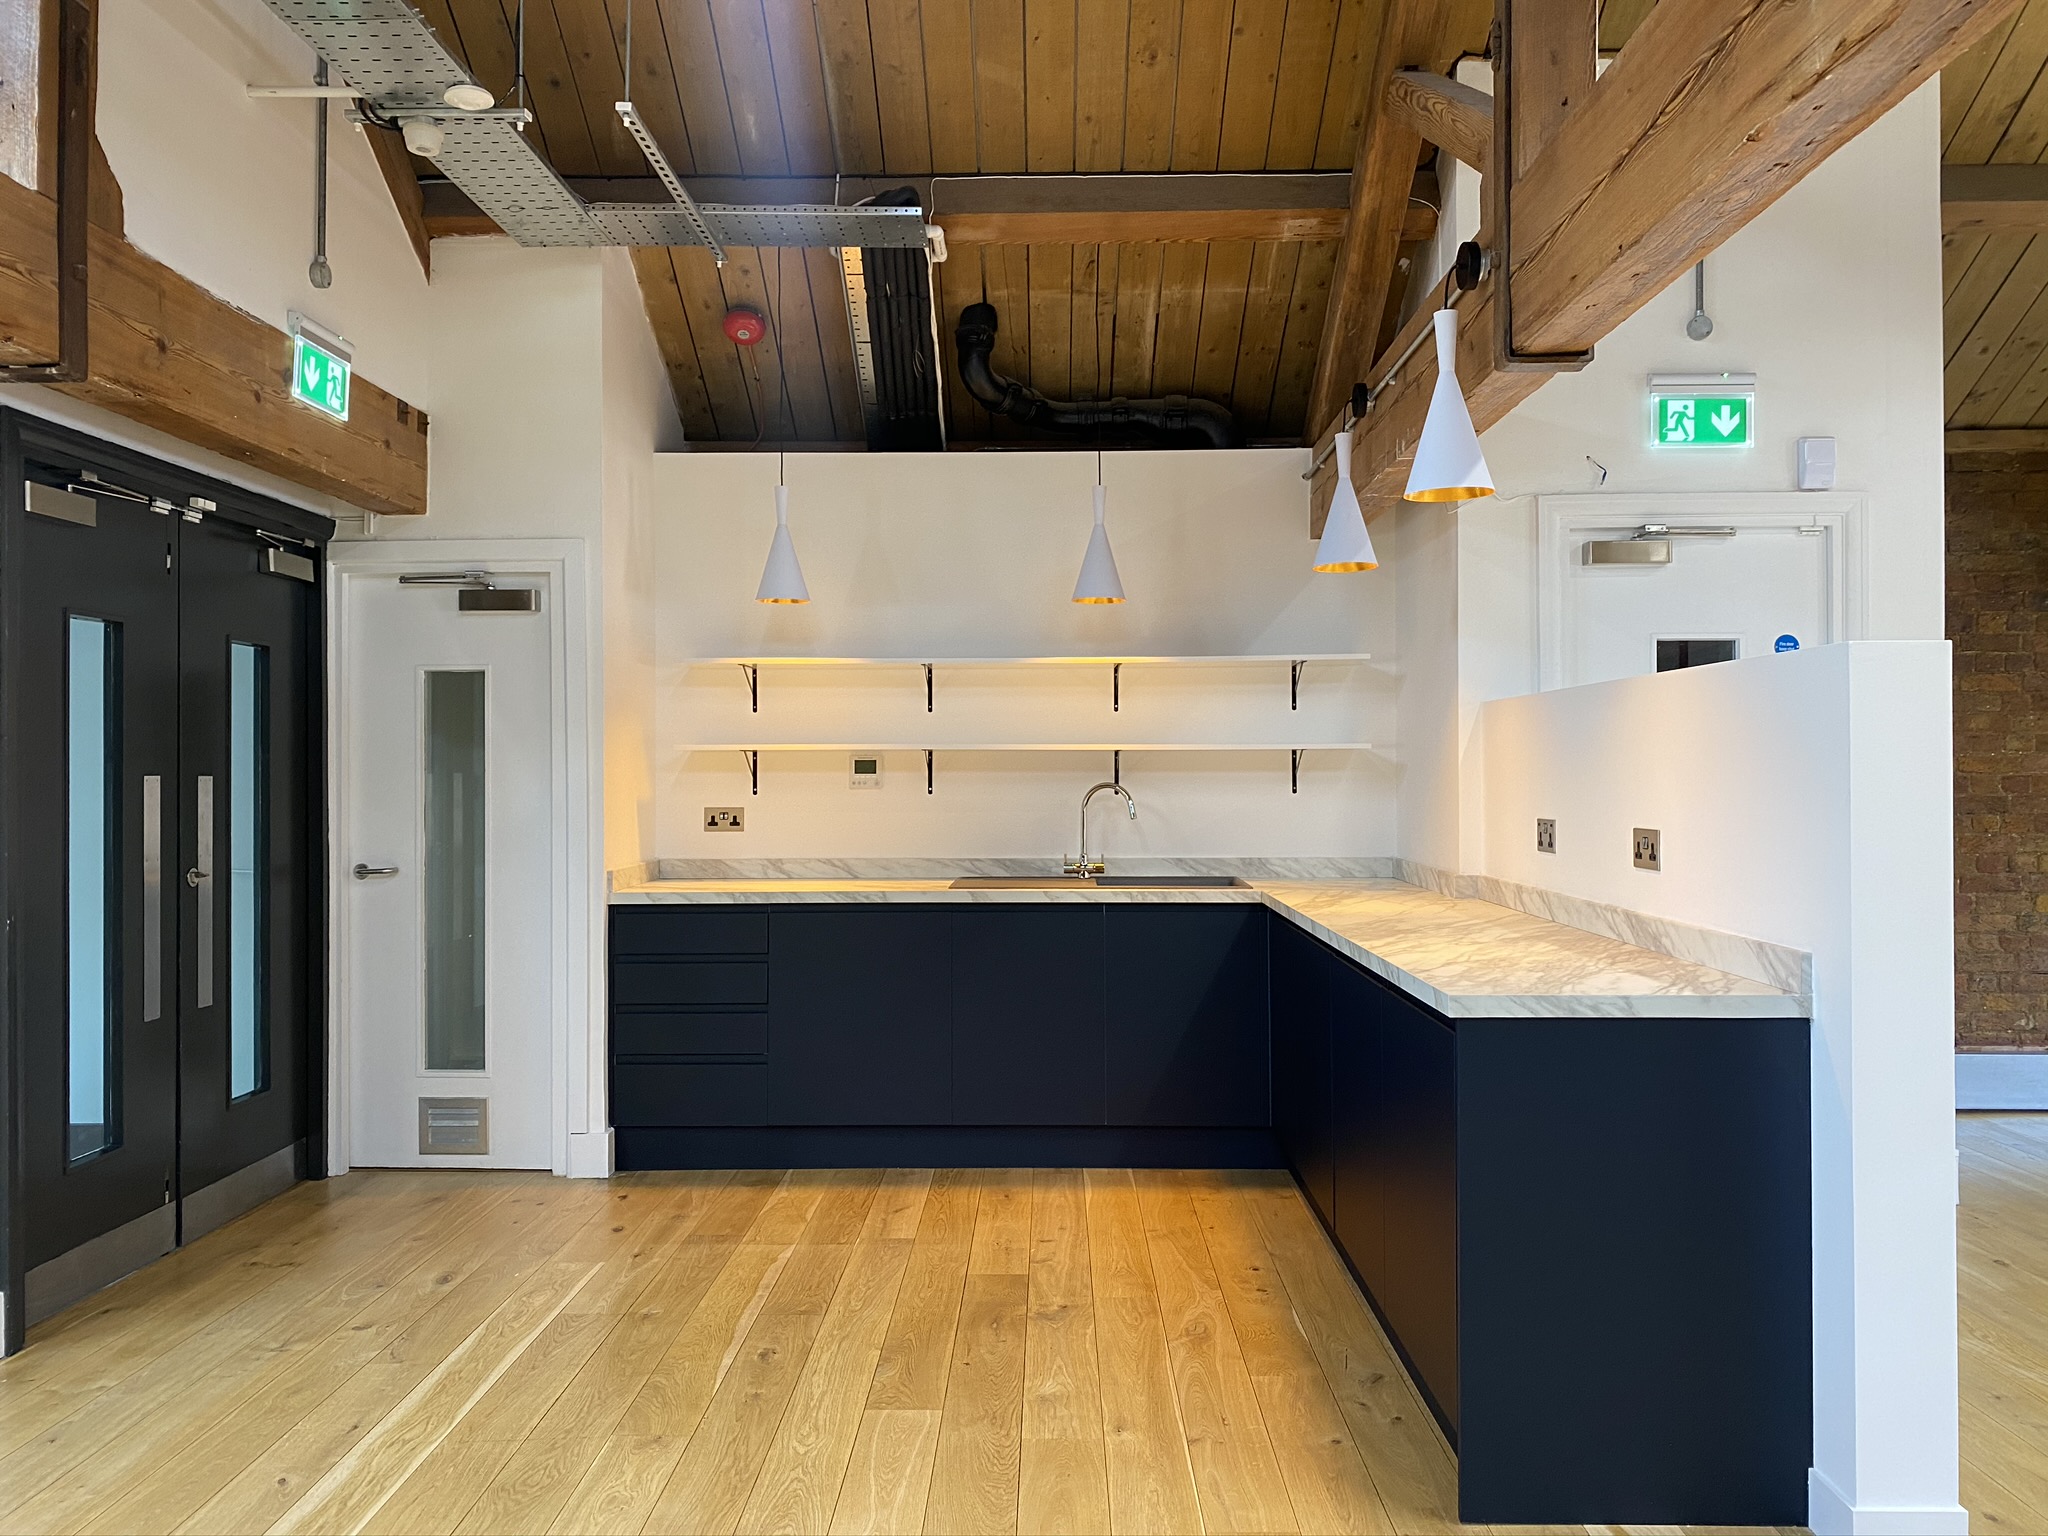 Small office kitchen in dark blue